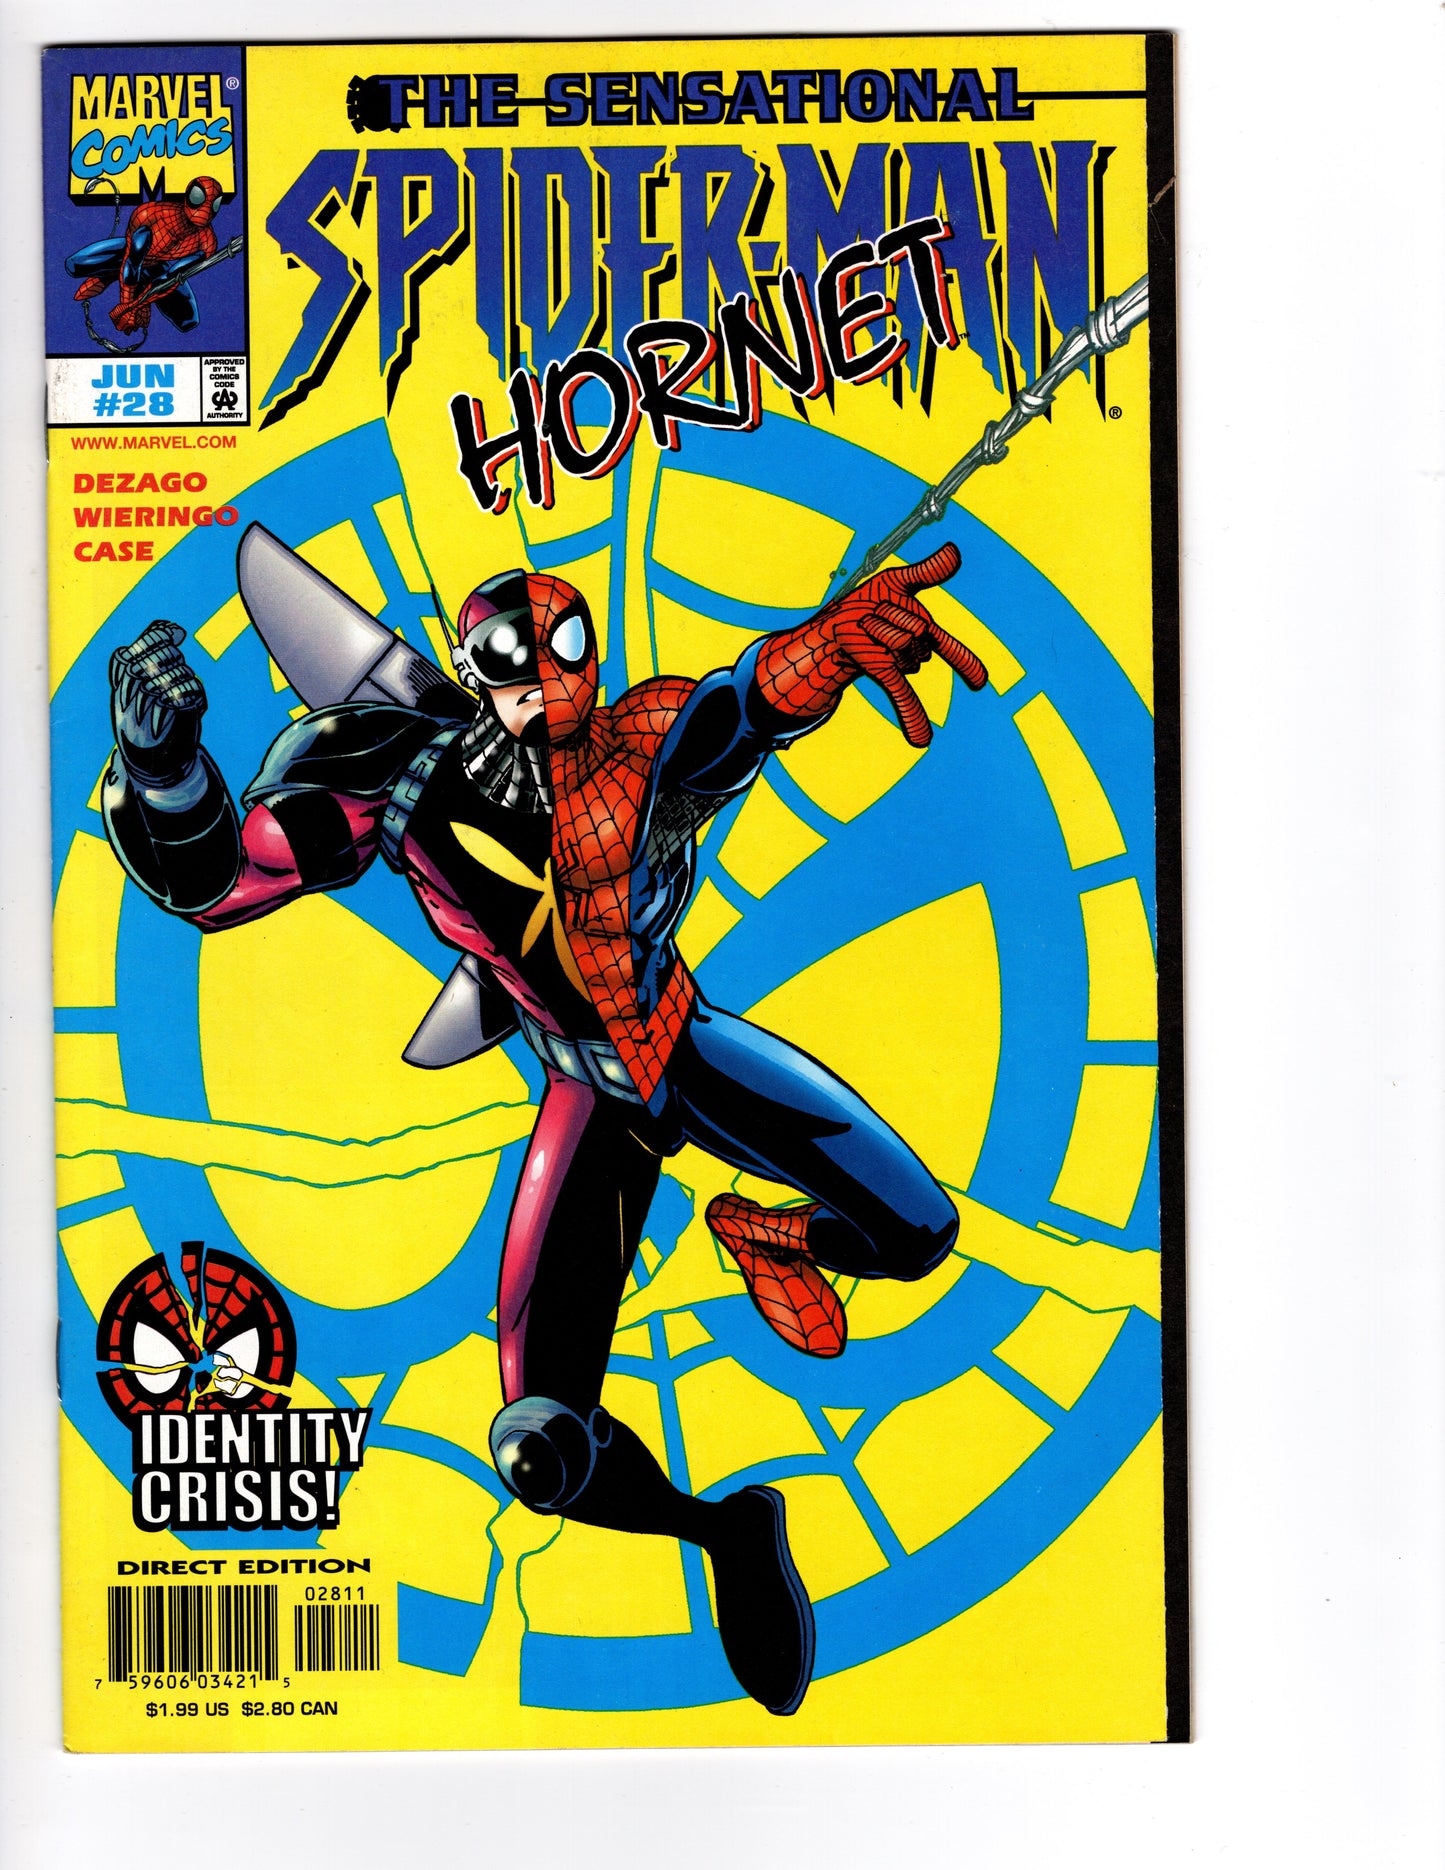 The Sensational Spider-Man No. 28